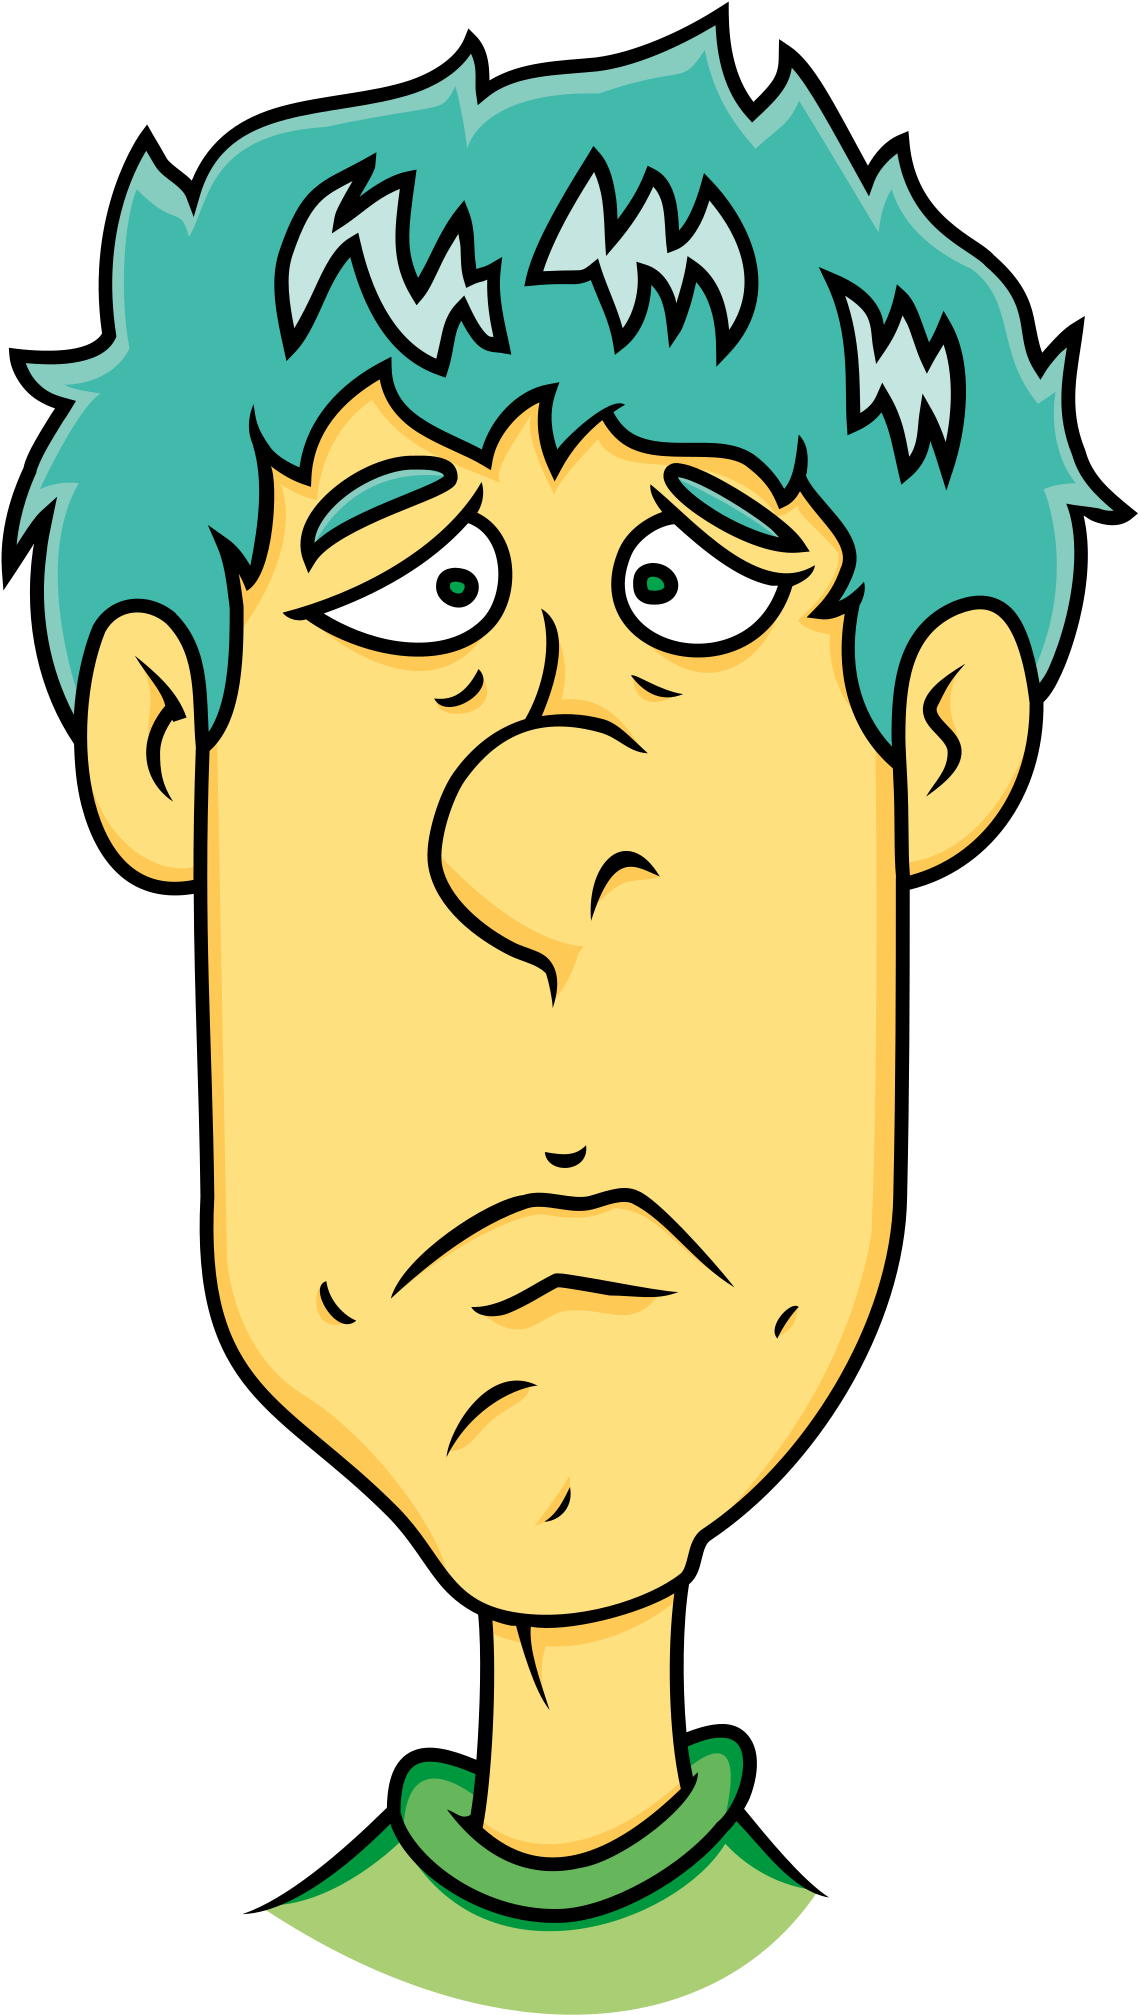 Face Of Sad Man - Sad Man Cartoon (2400x2400)